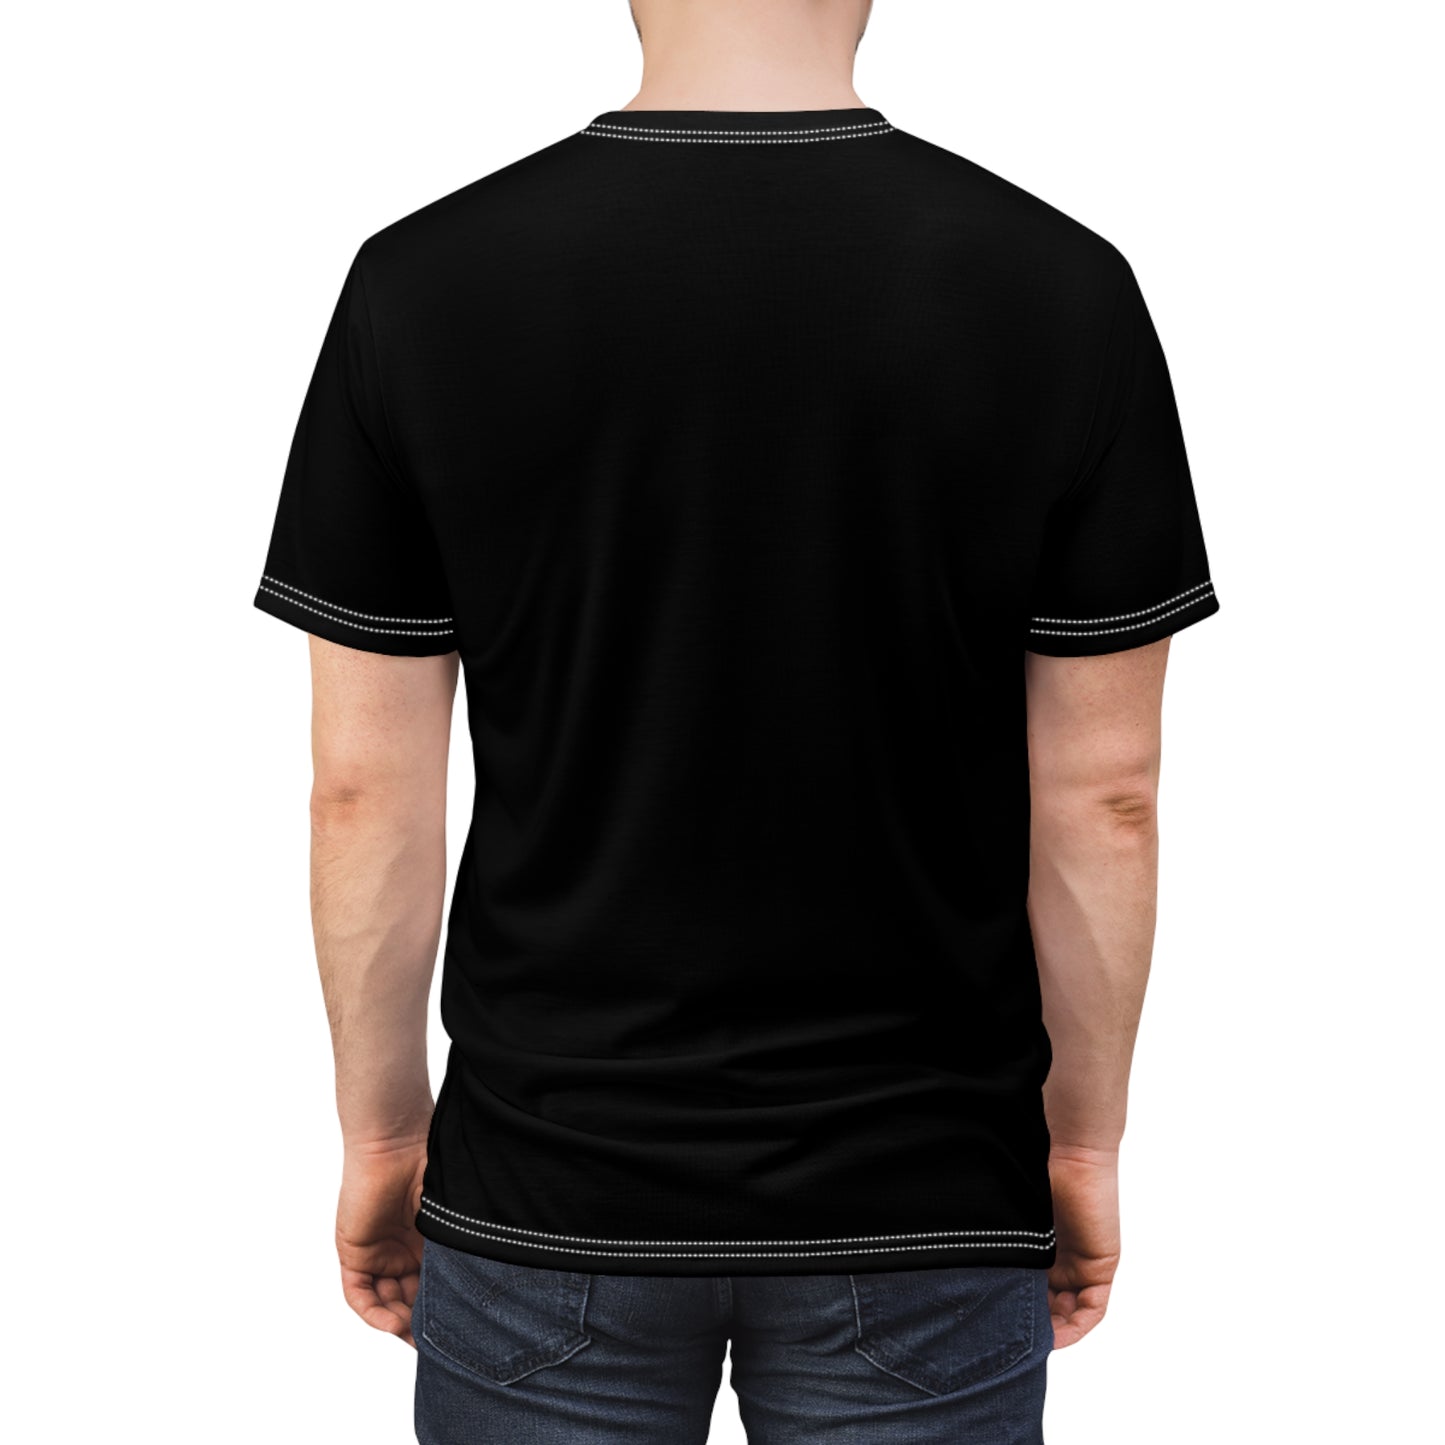 Unisex Black T-Shirt Front Culture Image_00